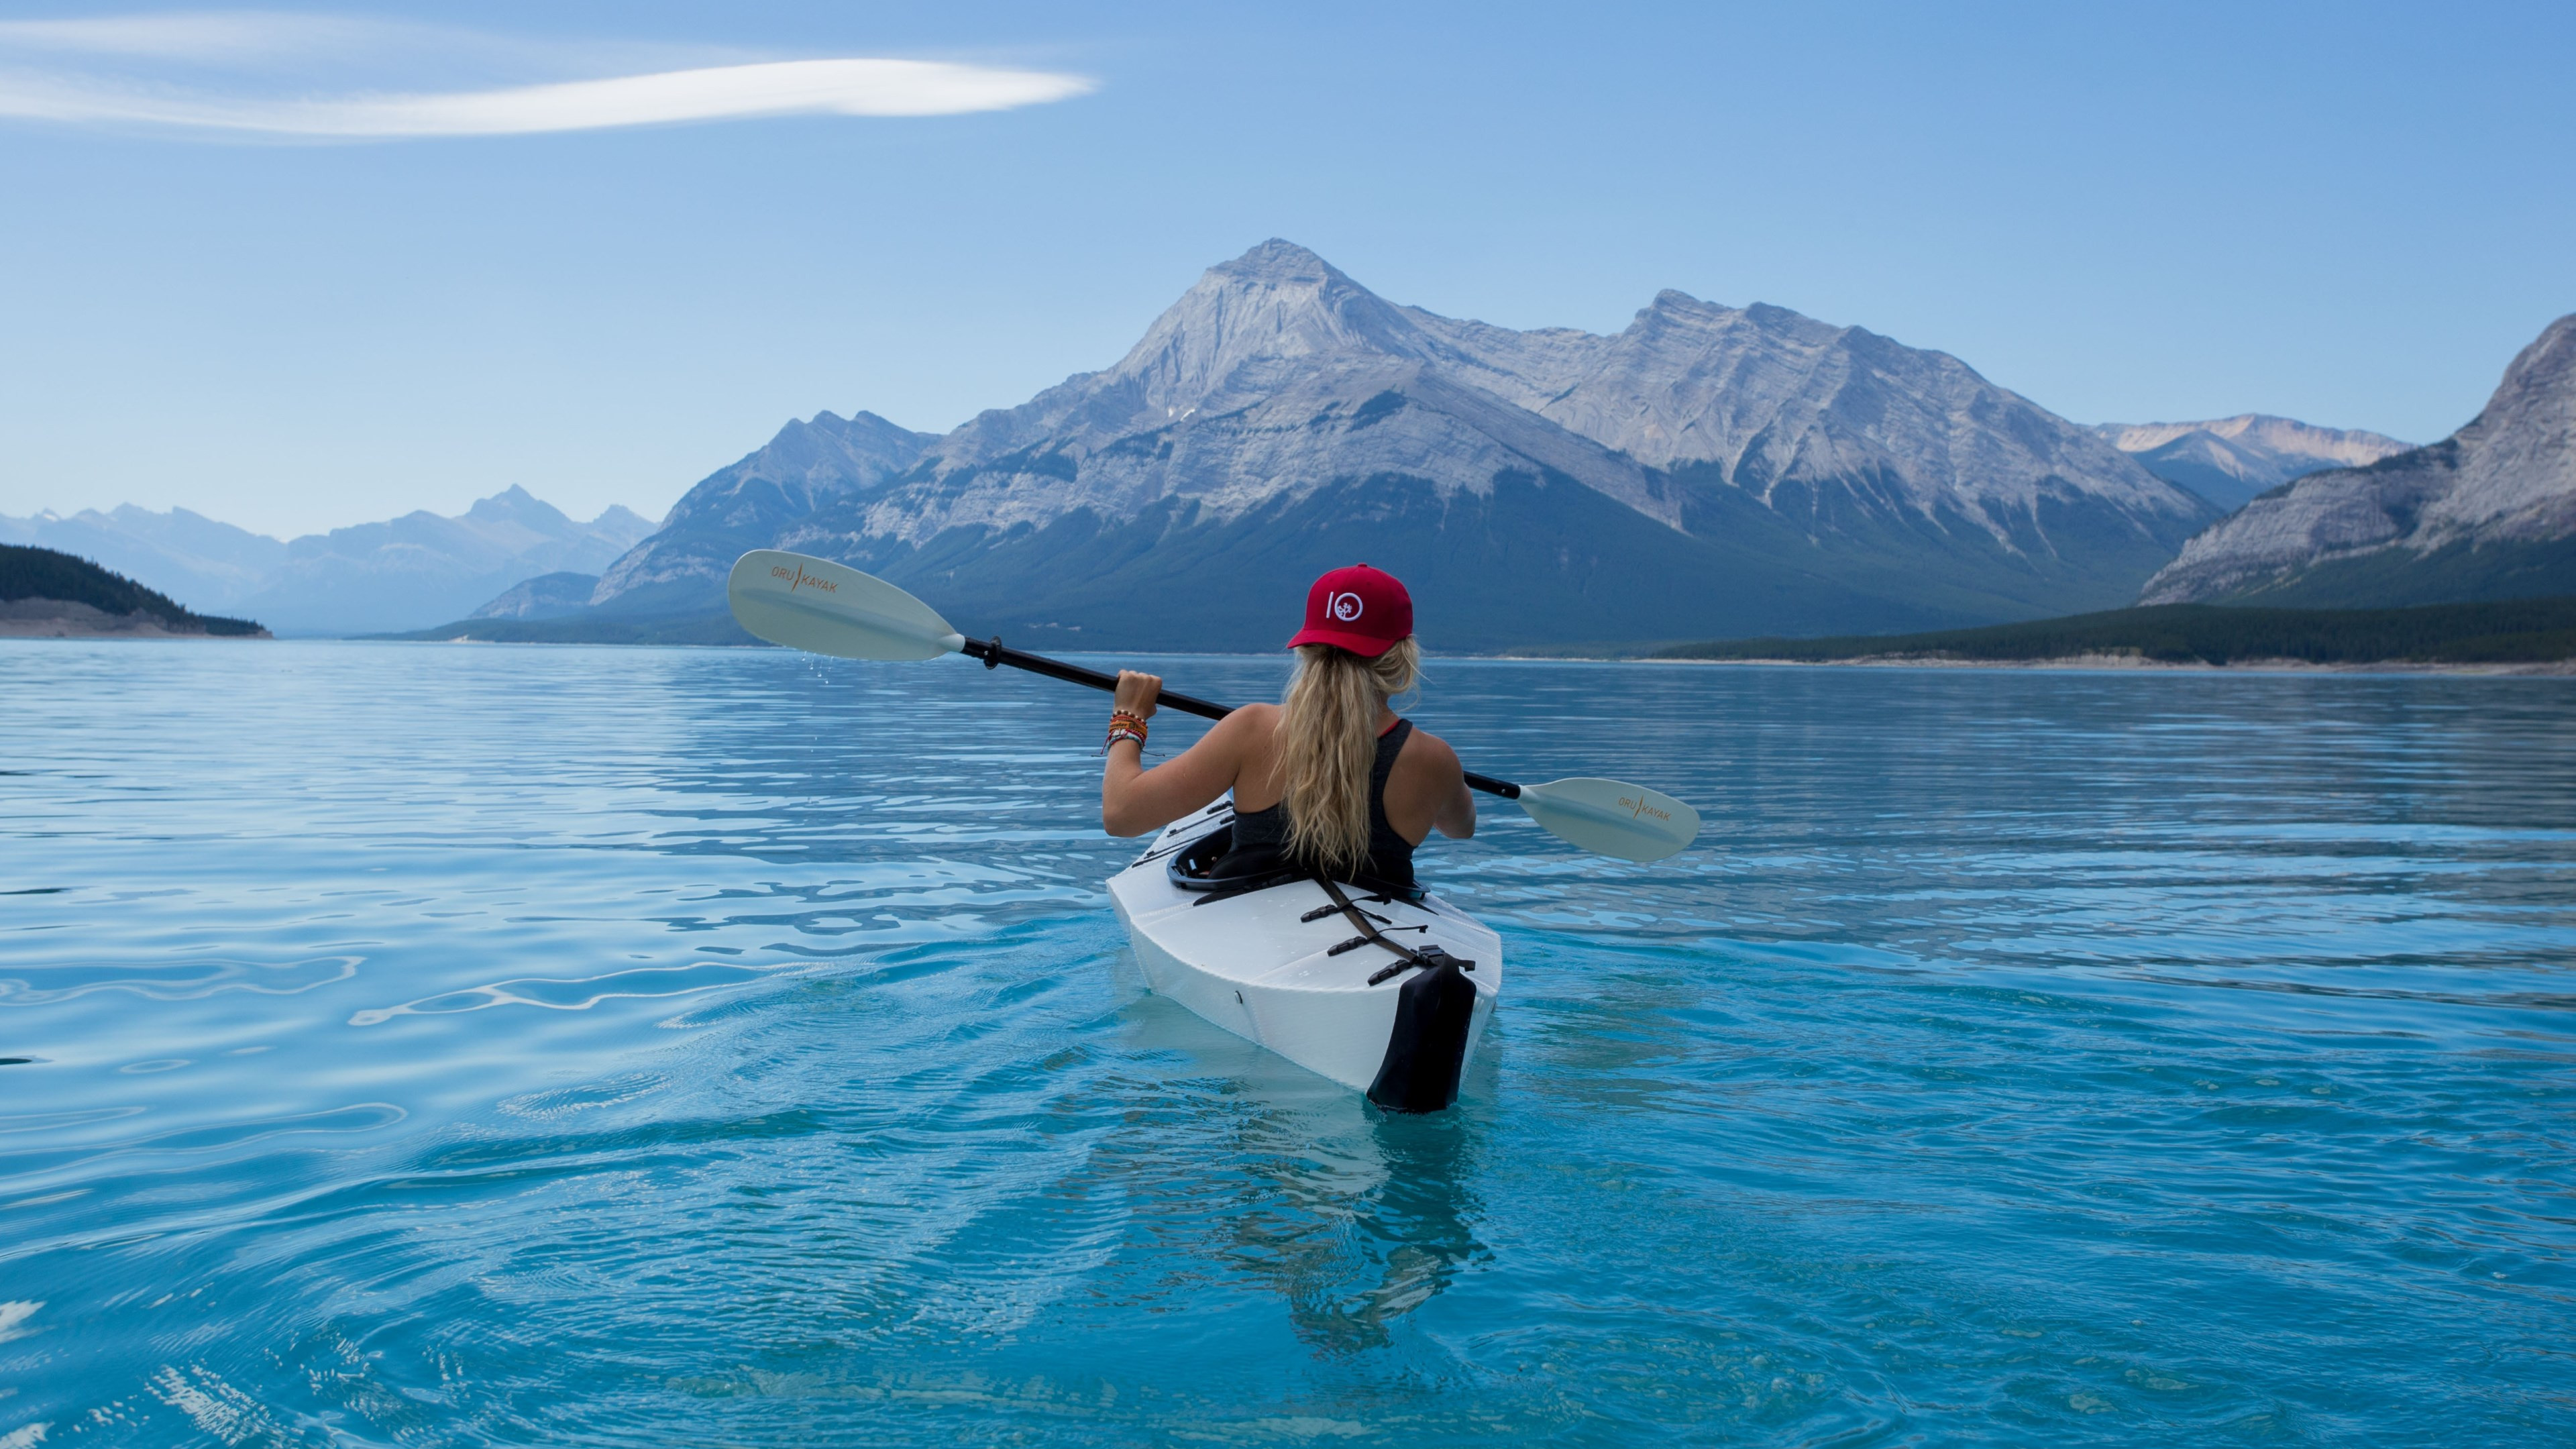 Trip with kayak on lake wallpaper 3840x2160